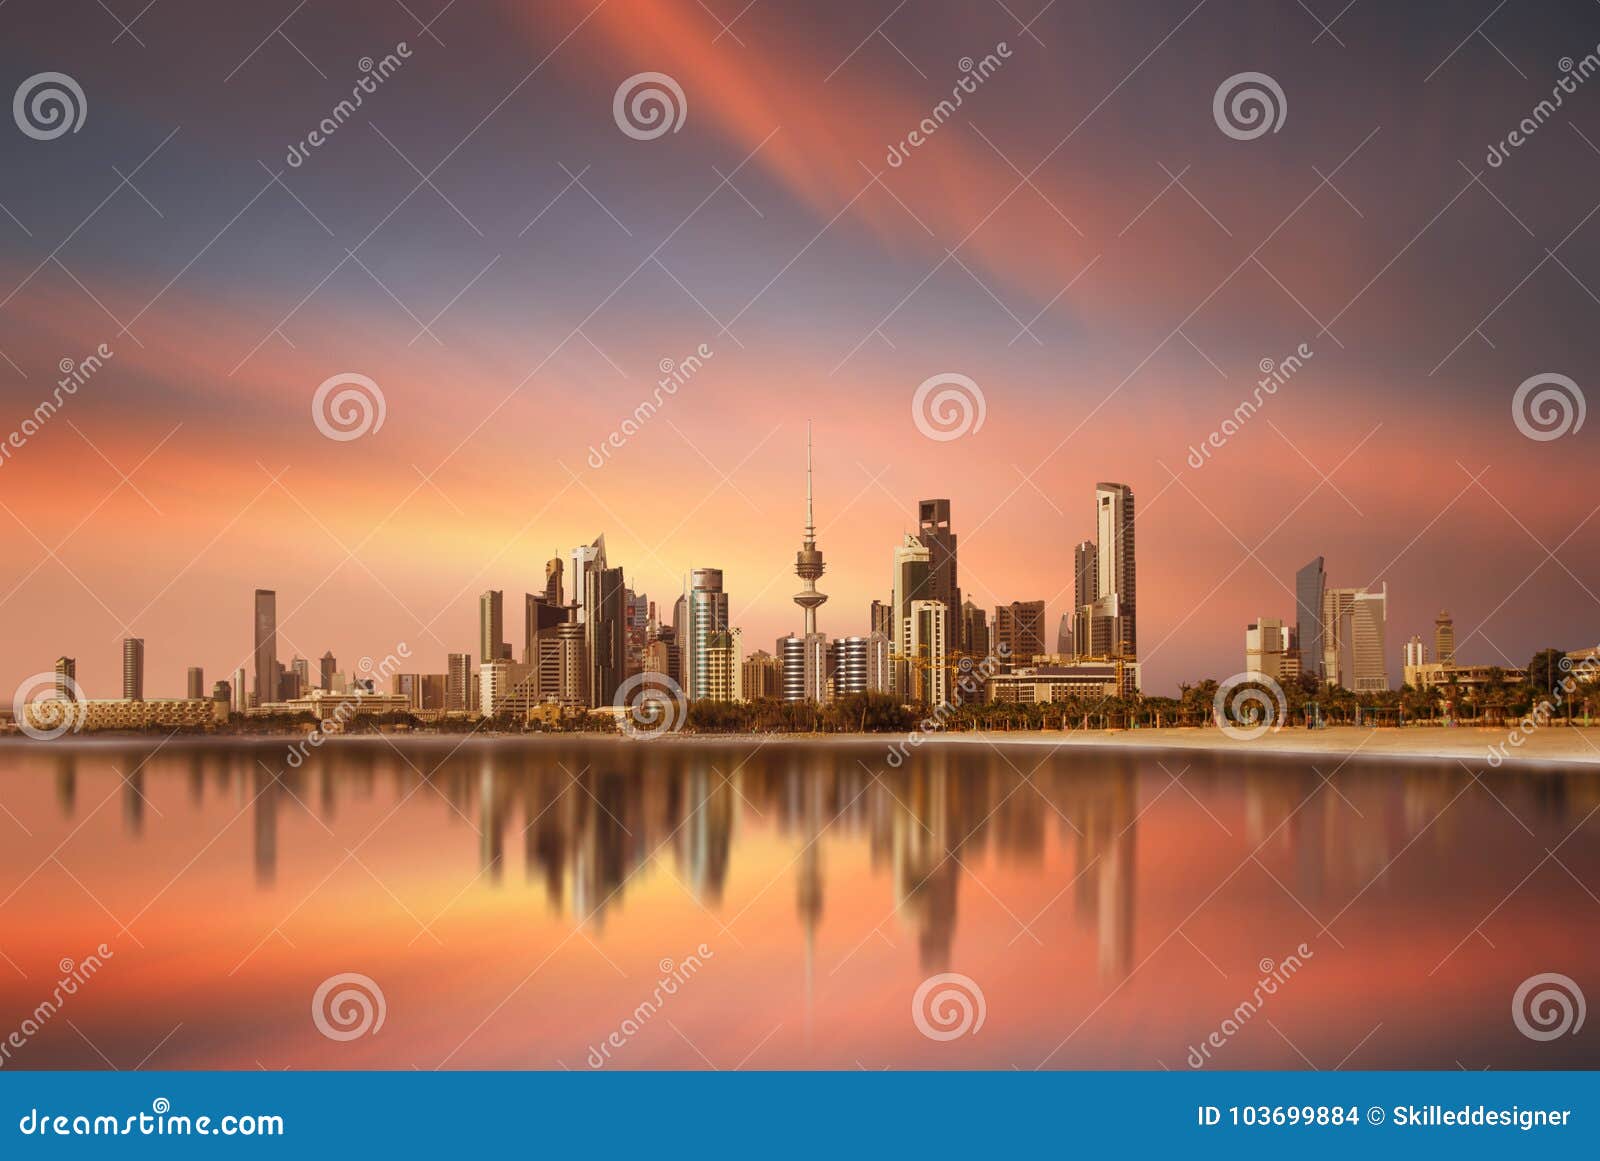 kuwait city skyline during sunset